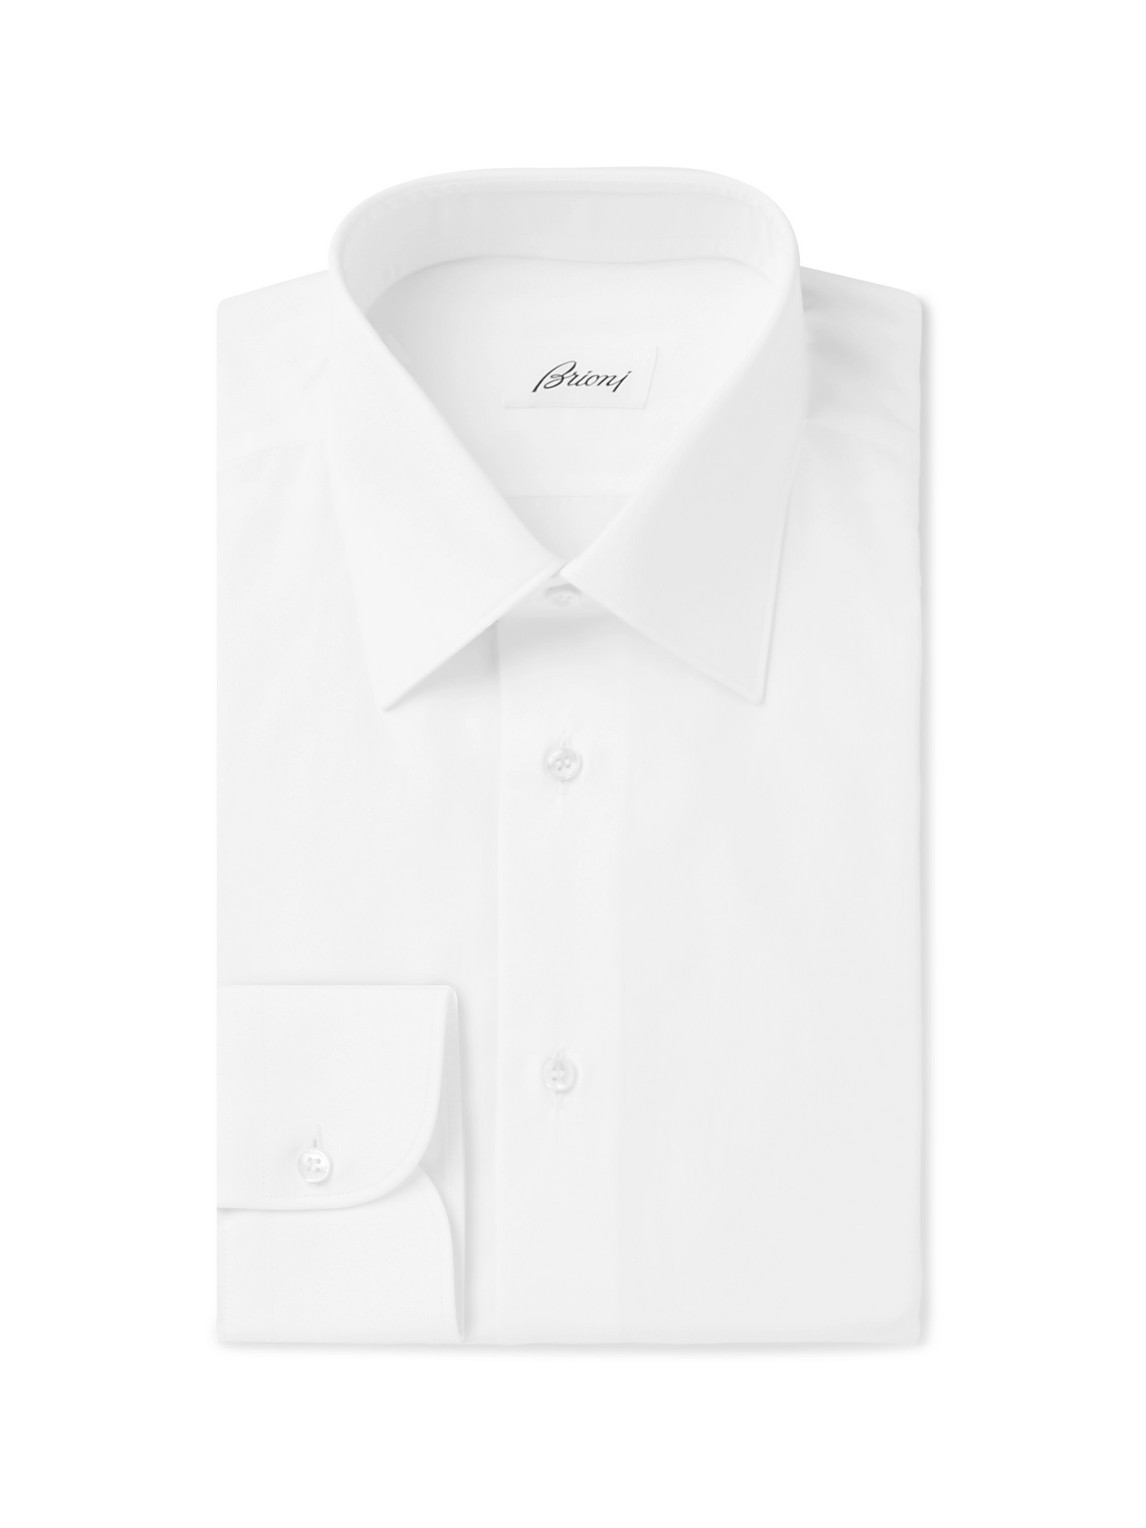 Brioni - White Cotton-Poplin Shirt - Men - White - EU 44 von Brioni